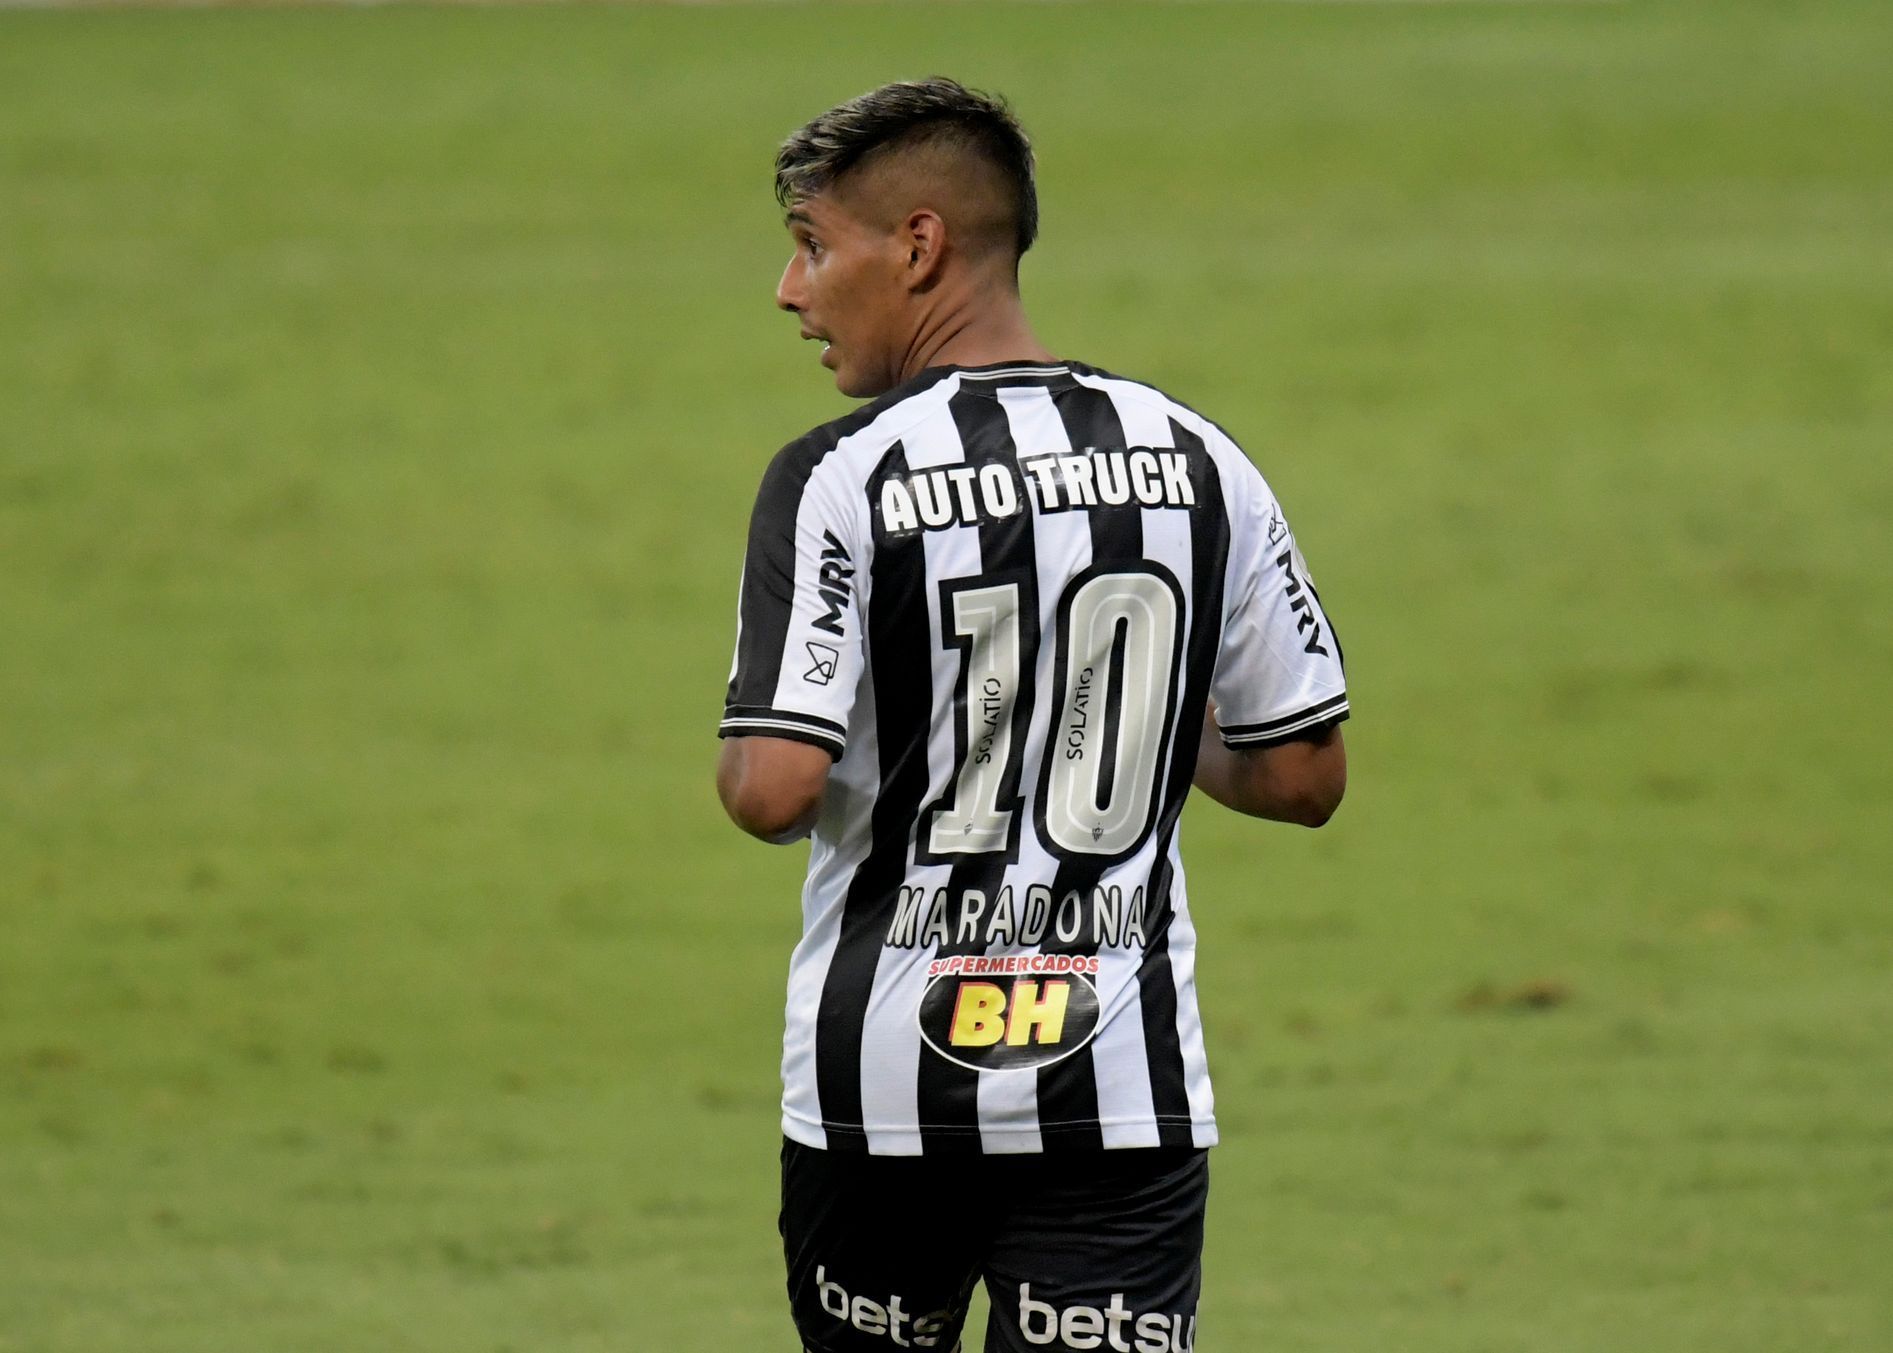 Maradonovu památku si připomněli i fotbalisté v brazilské lize